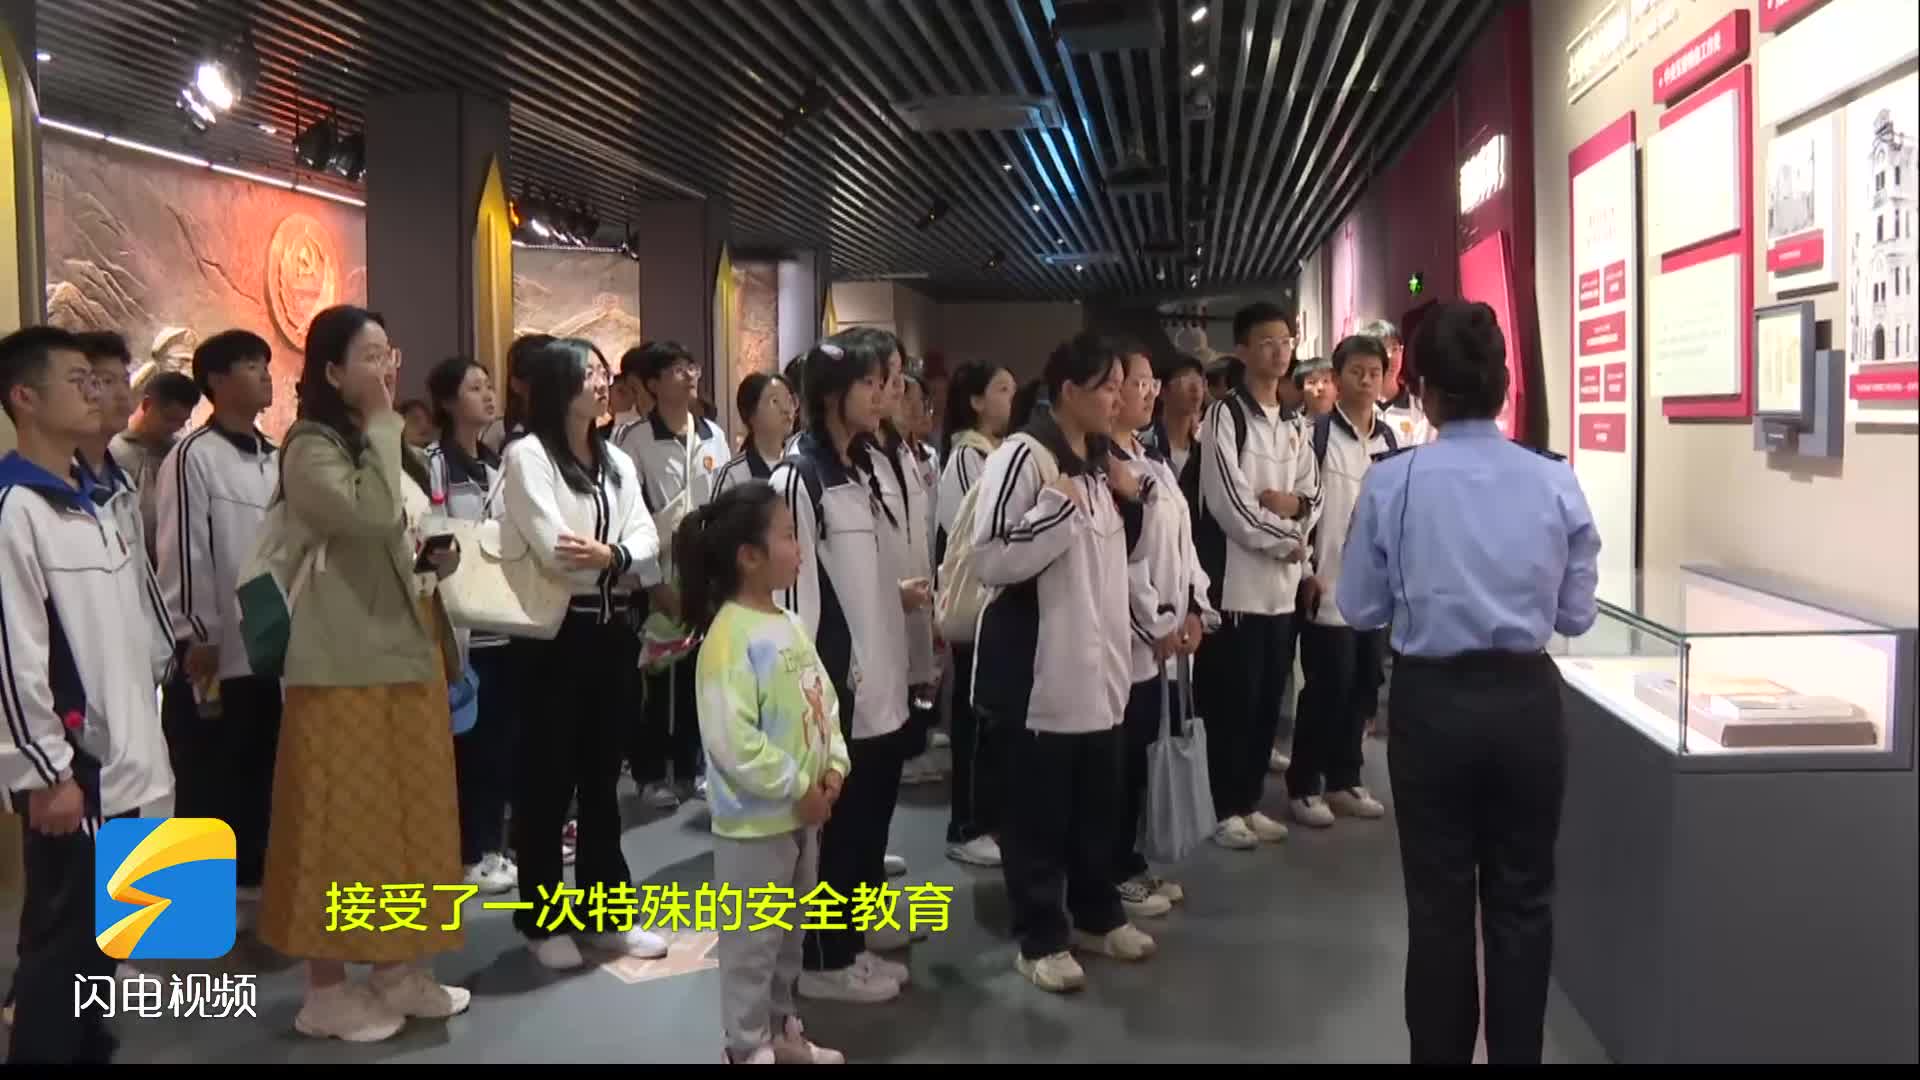 增强国防意识 枣庄市中学生参观国家安全教育馆